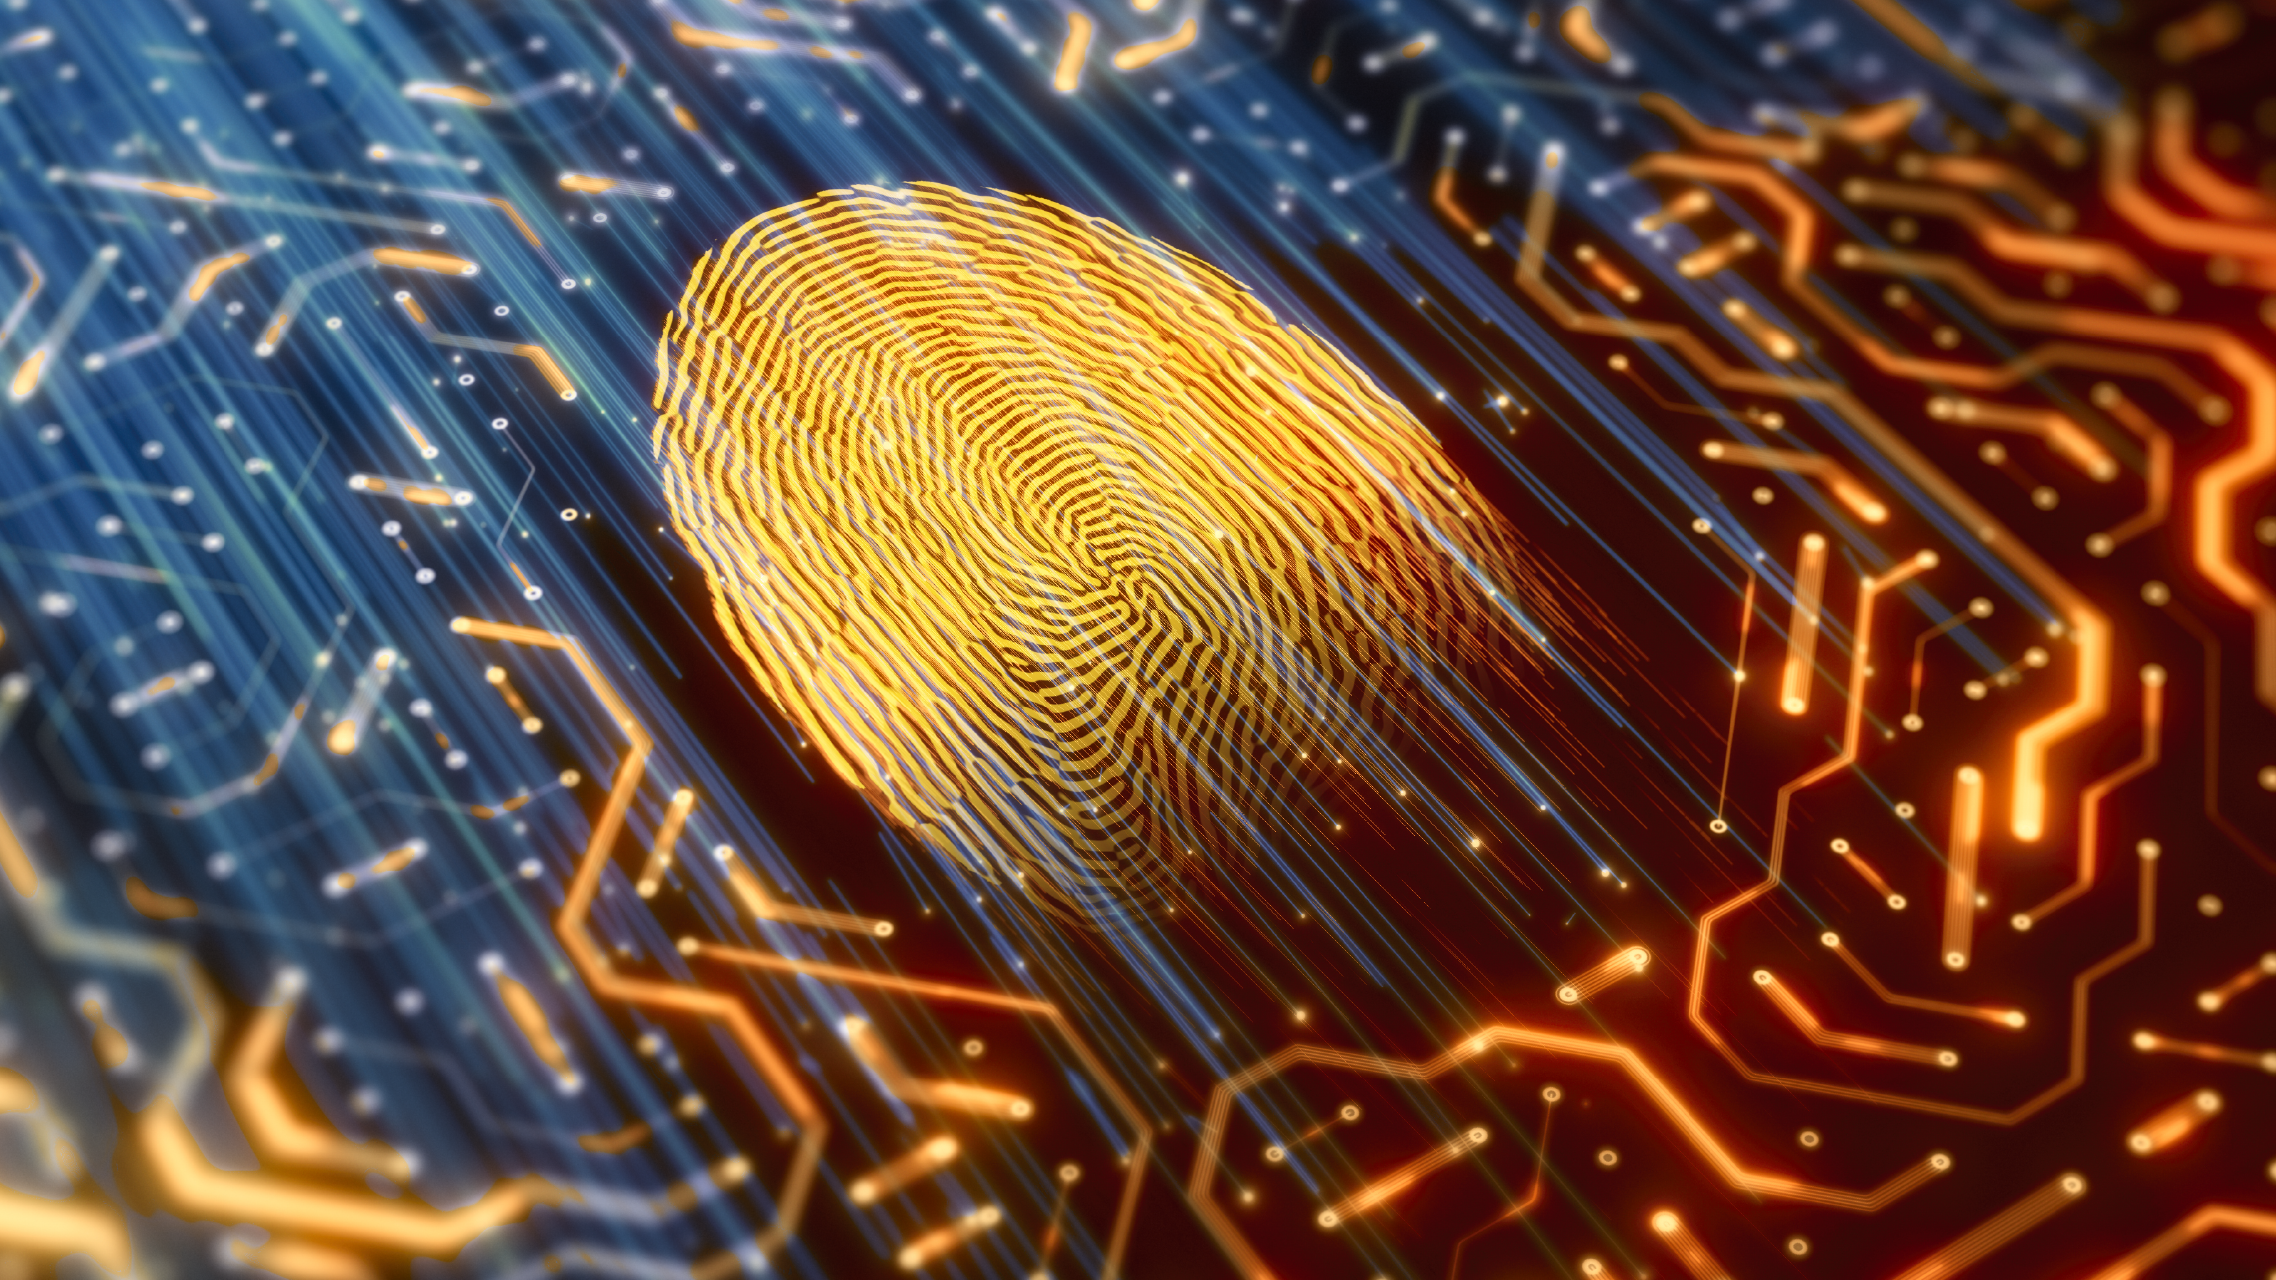 Digital identity fingerprint scanner